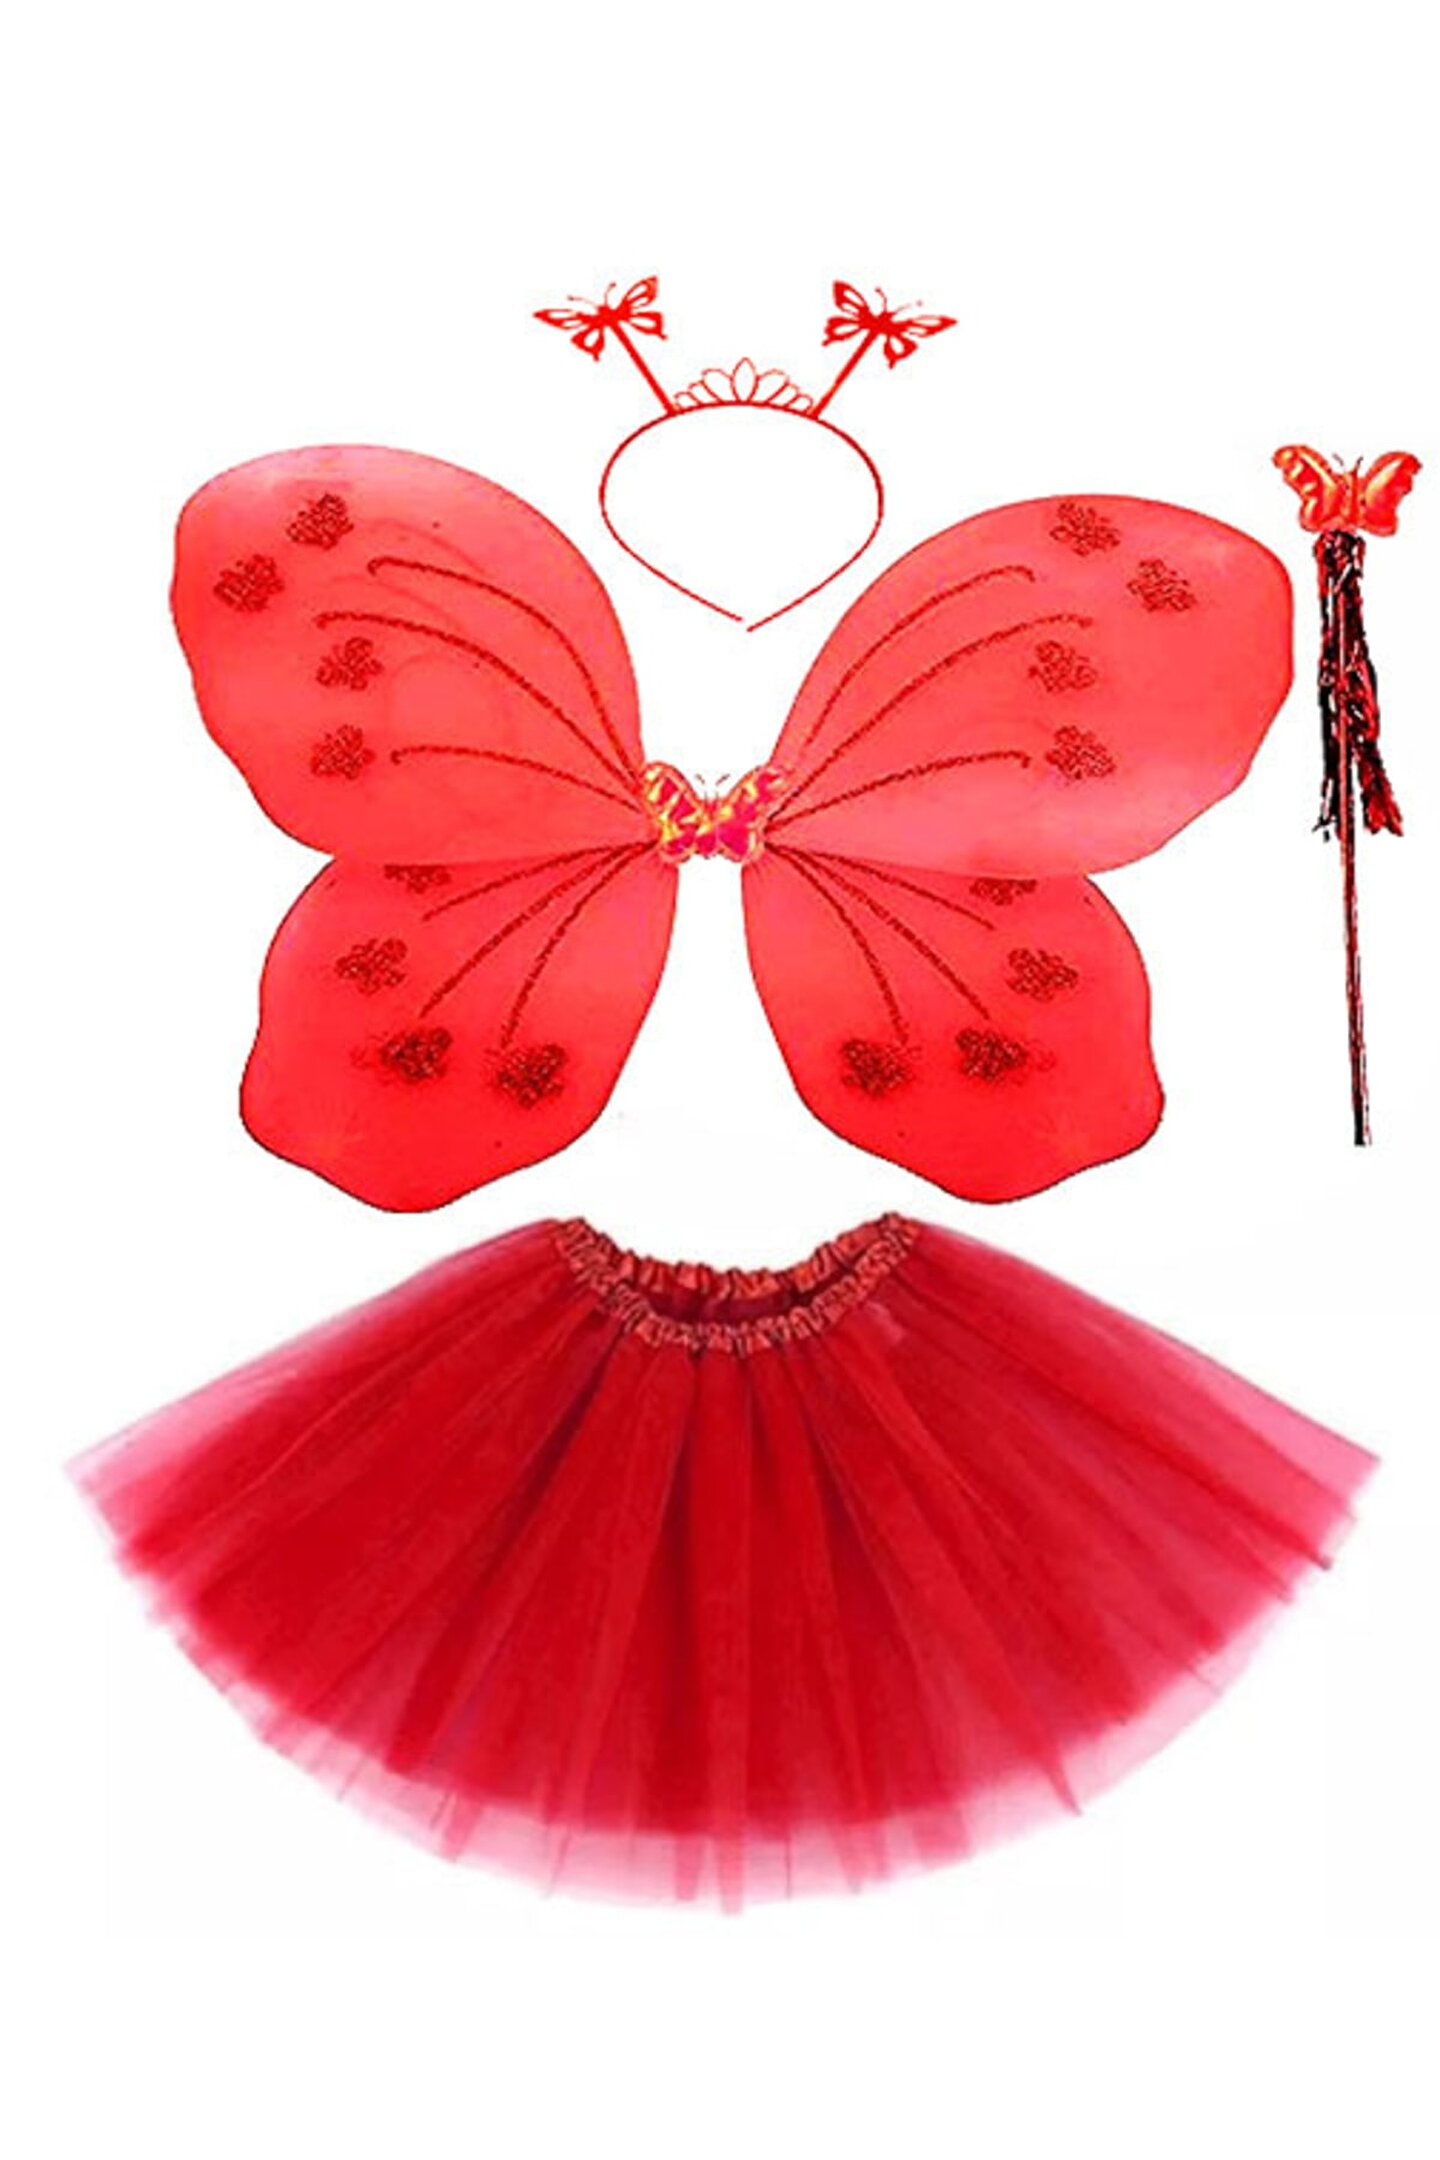 SAFE GROUP Kırmızı Kelebek Kostümü - Kırmızı Kelebek Kostüm Aksesuar Seti 4 Parça